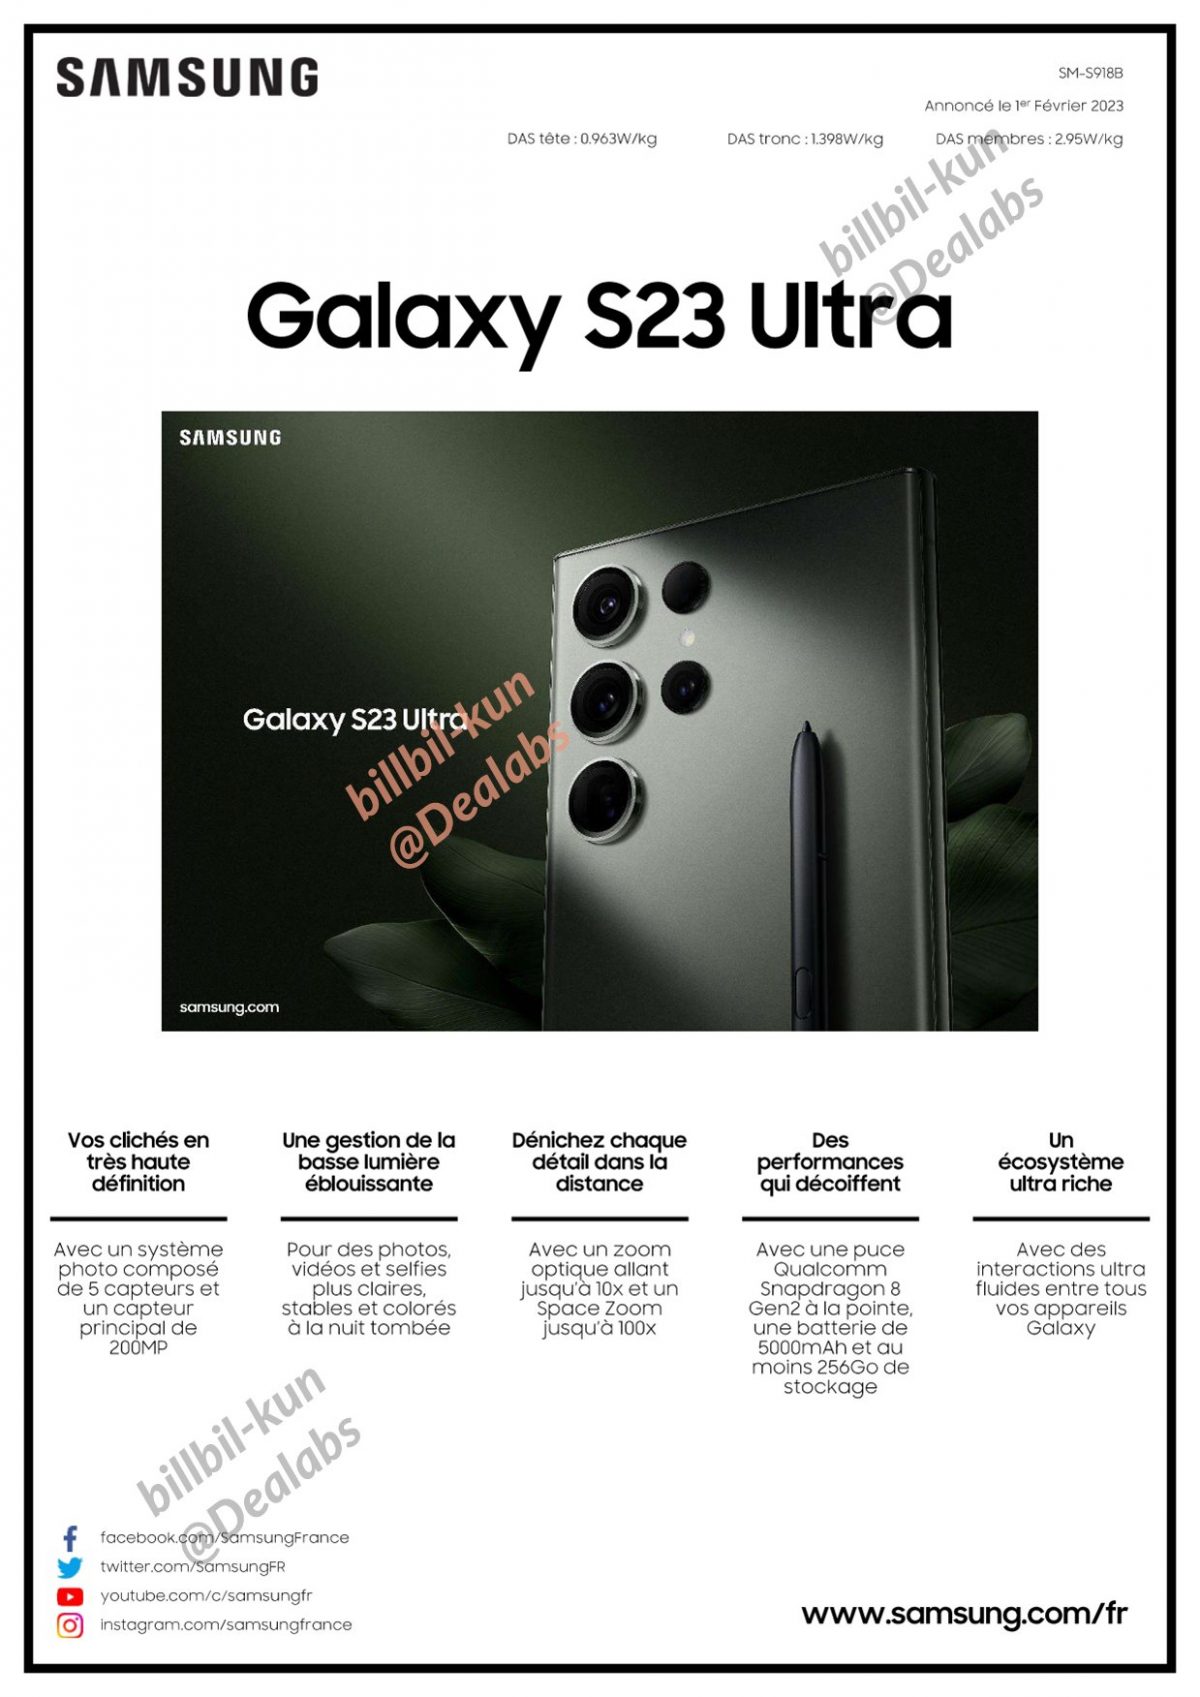 Samsung Galaxy S23 Ultra cena specyfikacja techniczna